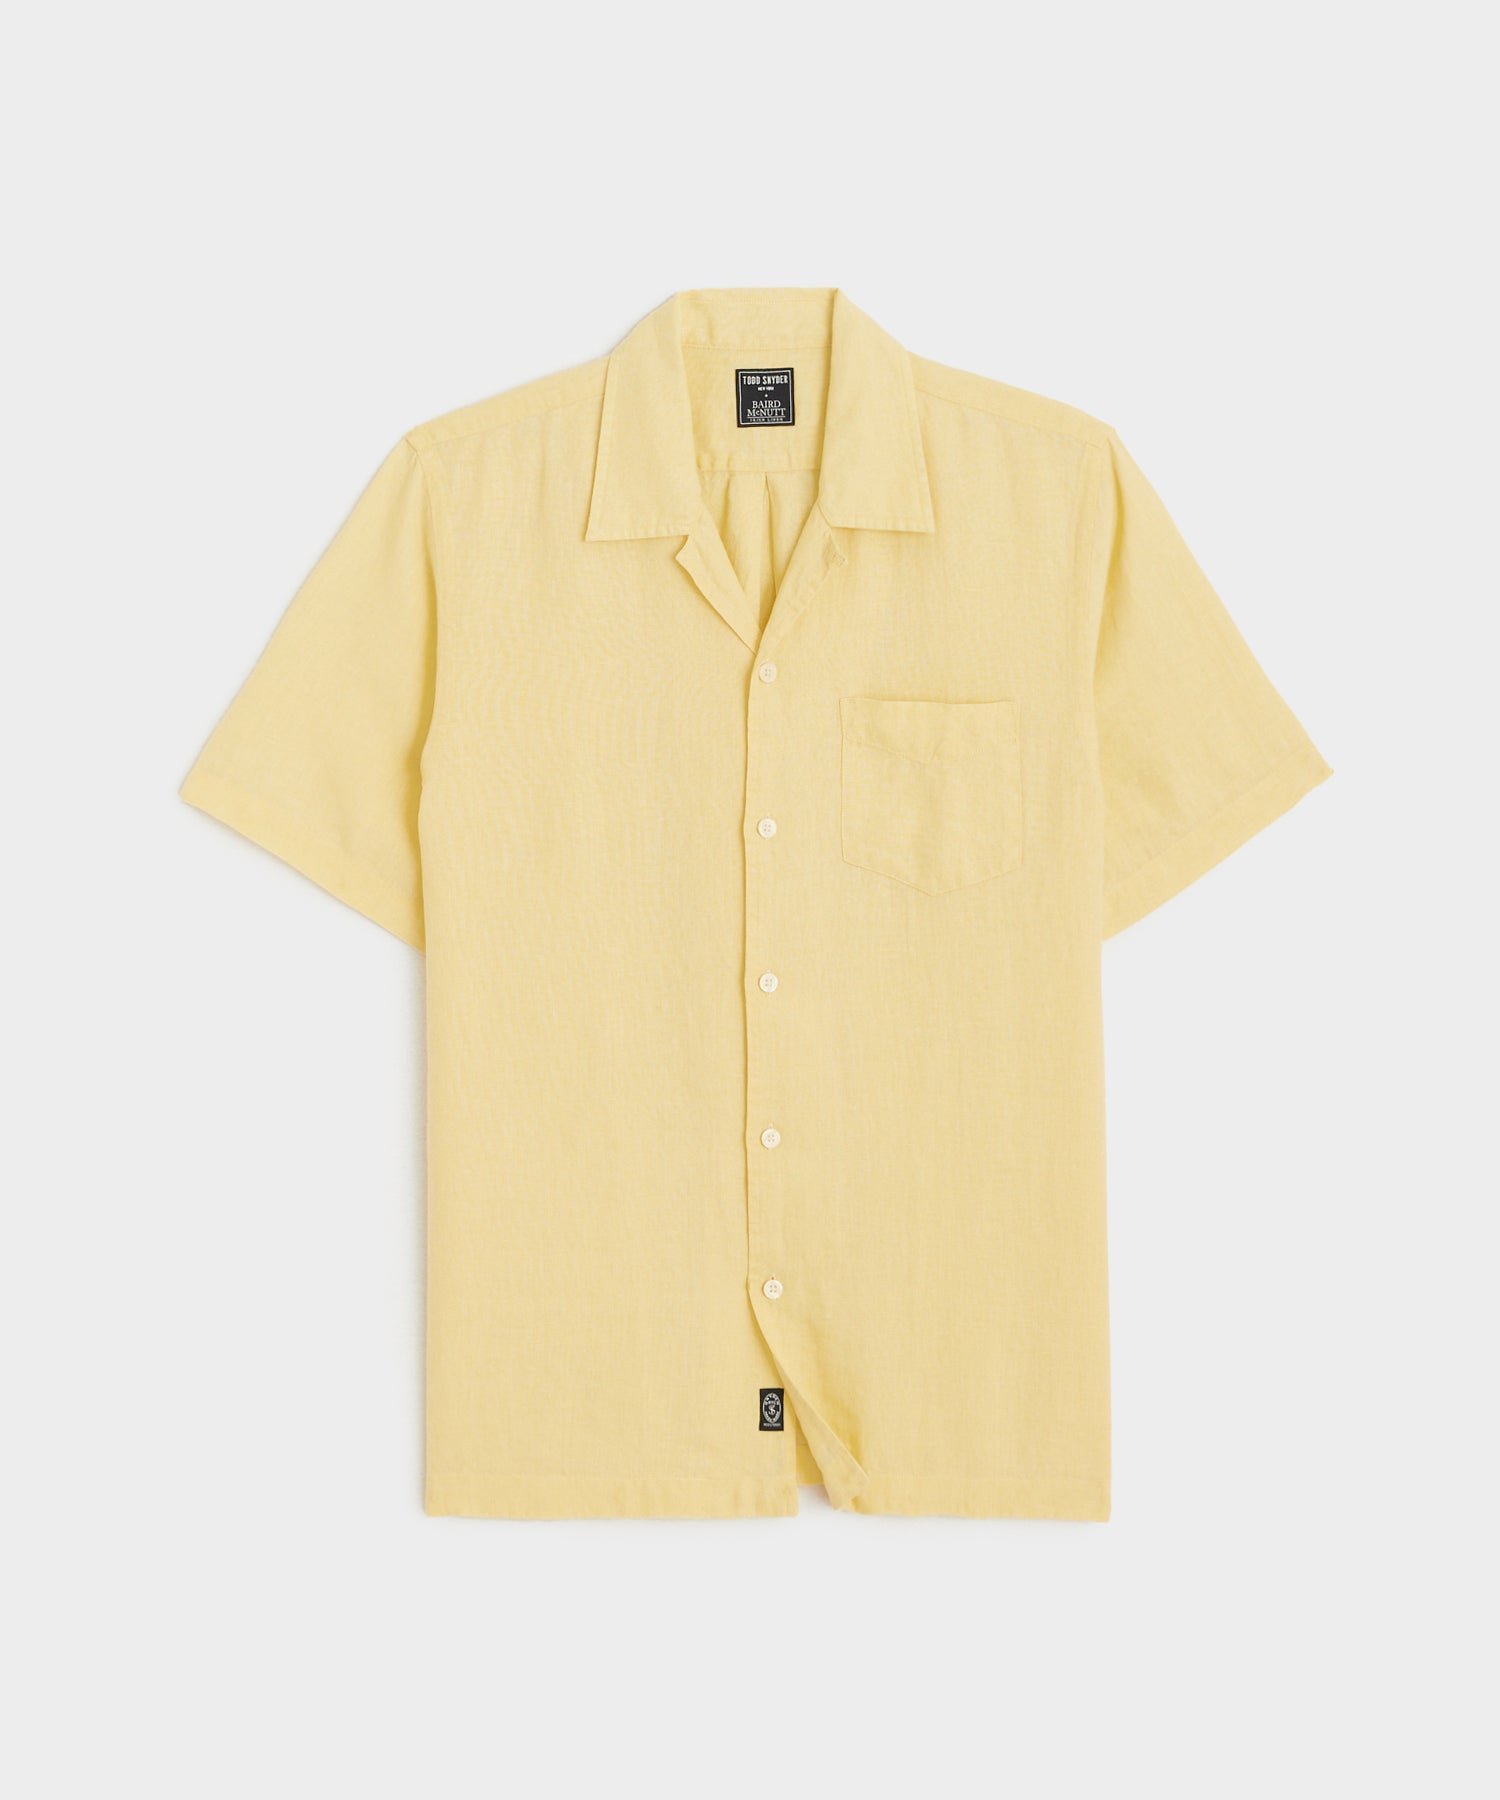 Sea Soft Irish Linen Camp Collar Shirt in Lemon